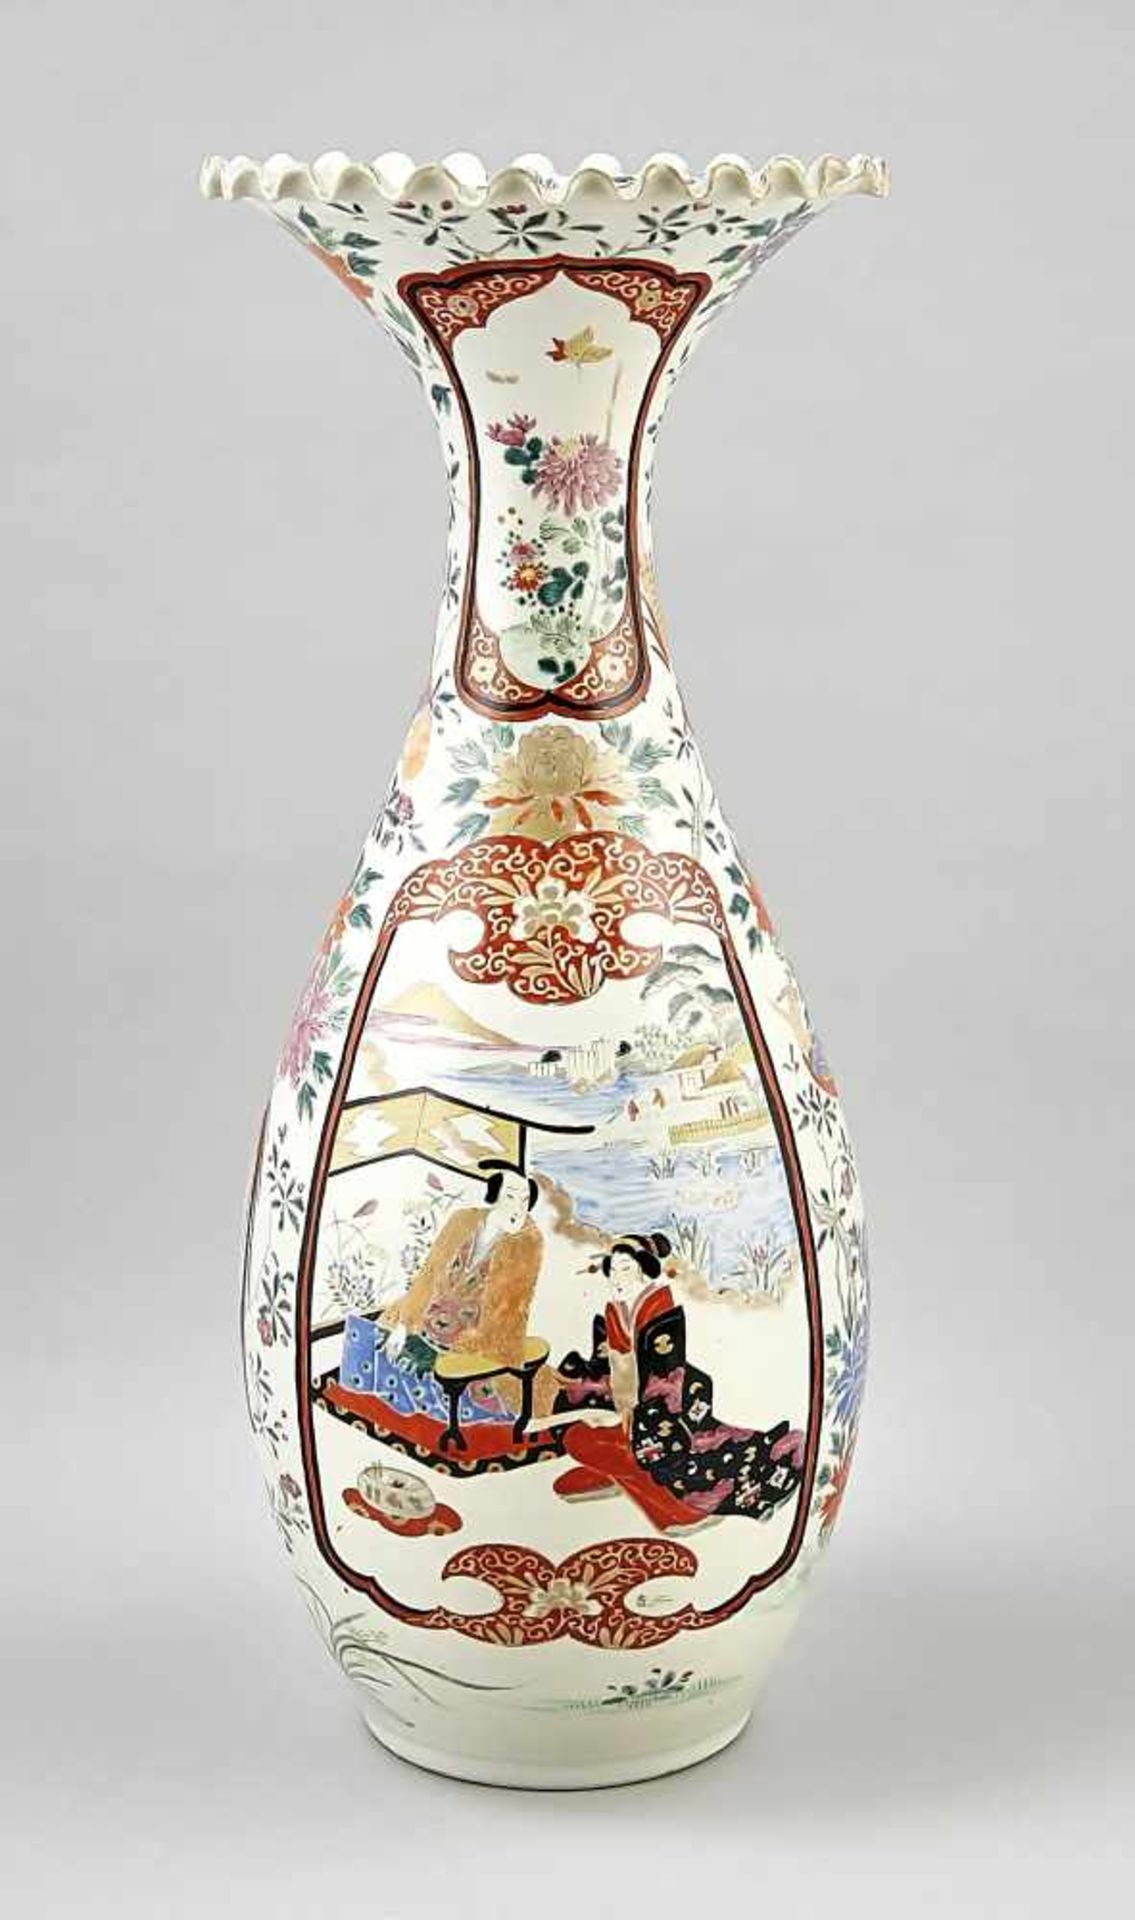 Große Imari-Flaschenvase, Japan, um 1900 (Meiji-zeitlich). Trompetenhals mit gewelltemLippenrand.